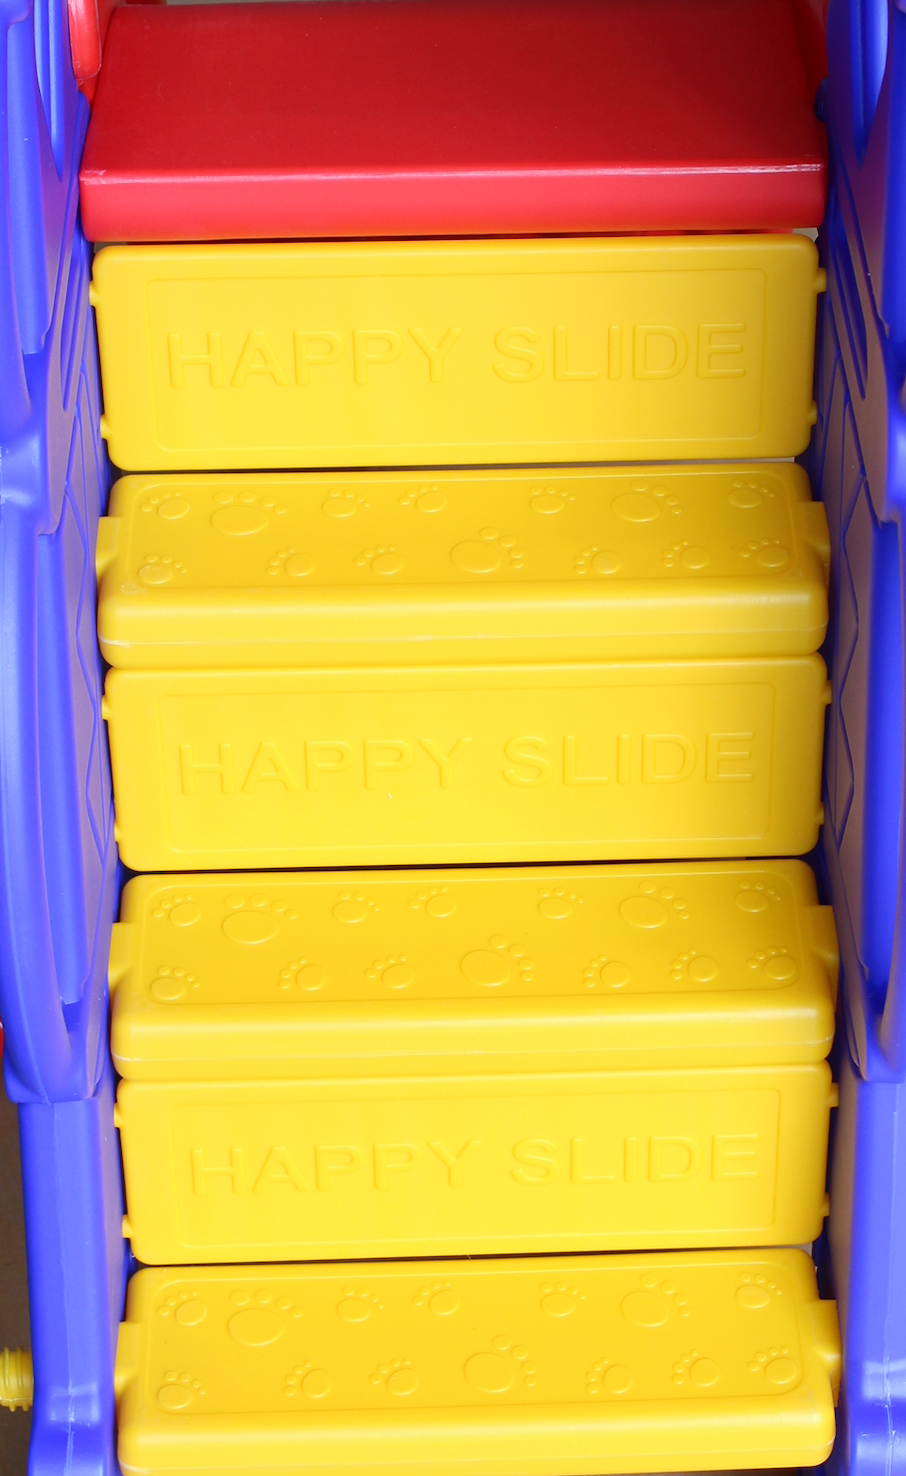 b - ware sweety toys 12718 schaukel und rutsche spielset 3-in 1 produkt rot/gelb/blau mit basketballkorb im eifelturmdesign